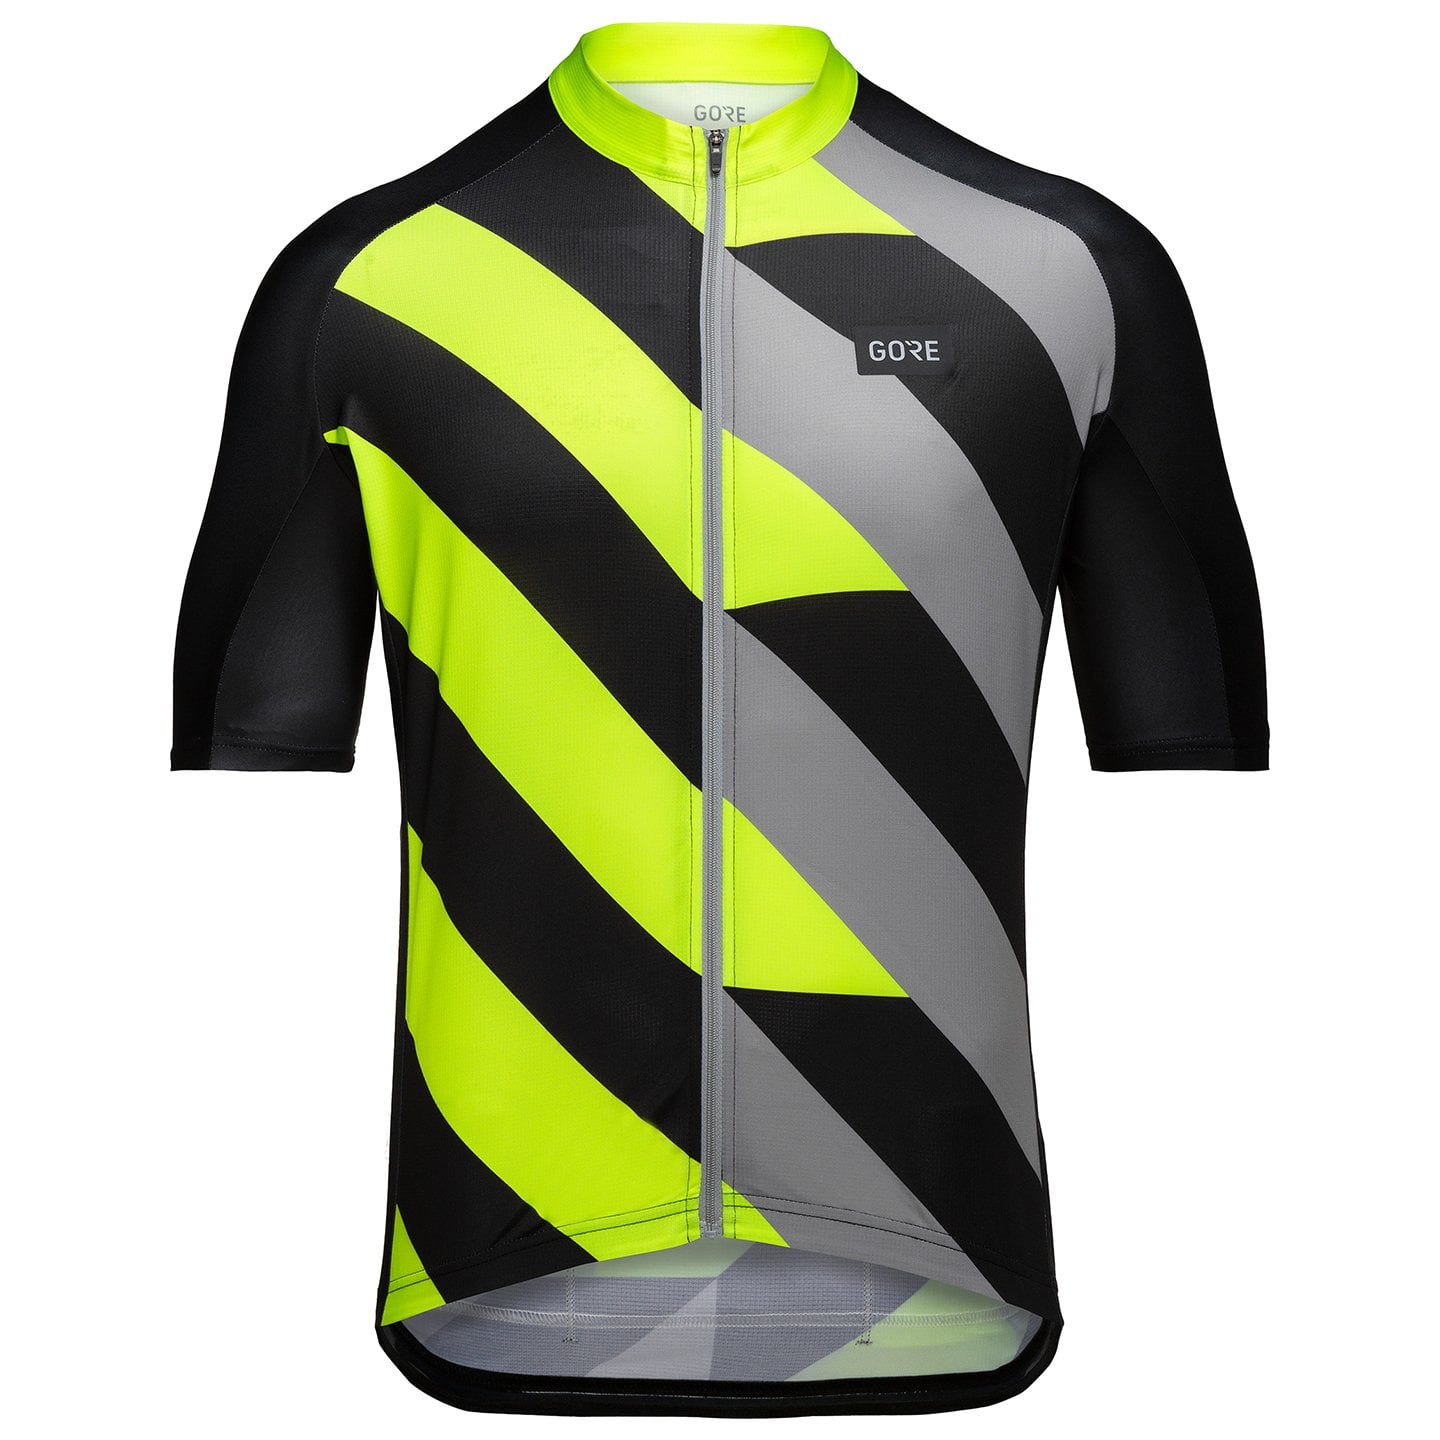 GORE WEAR Signal Short Sleeve Jersey Short Sleeve Jersey, for men, size M, Cycling jersey, Cycling clothing